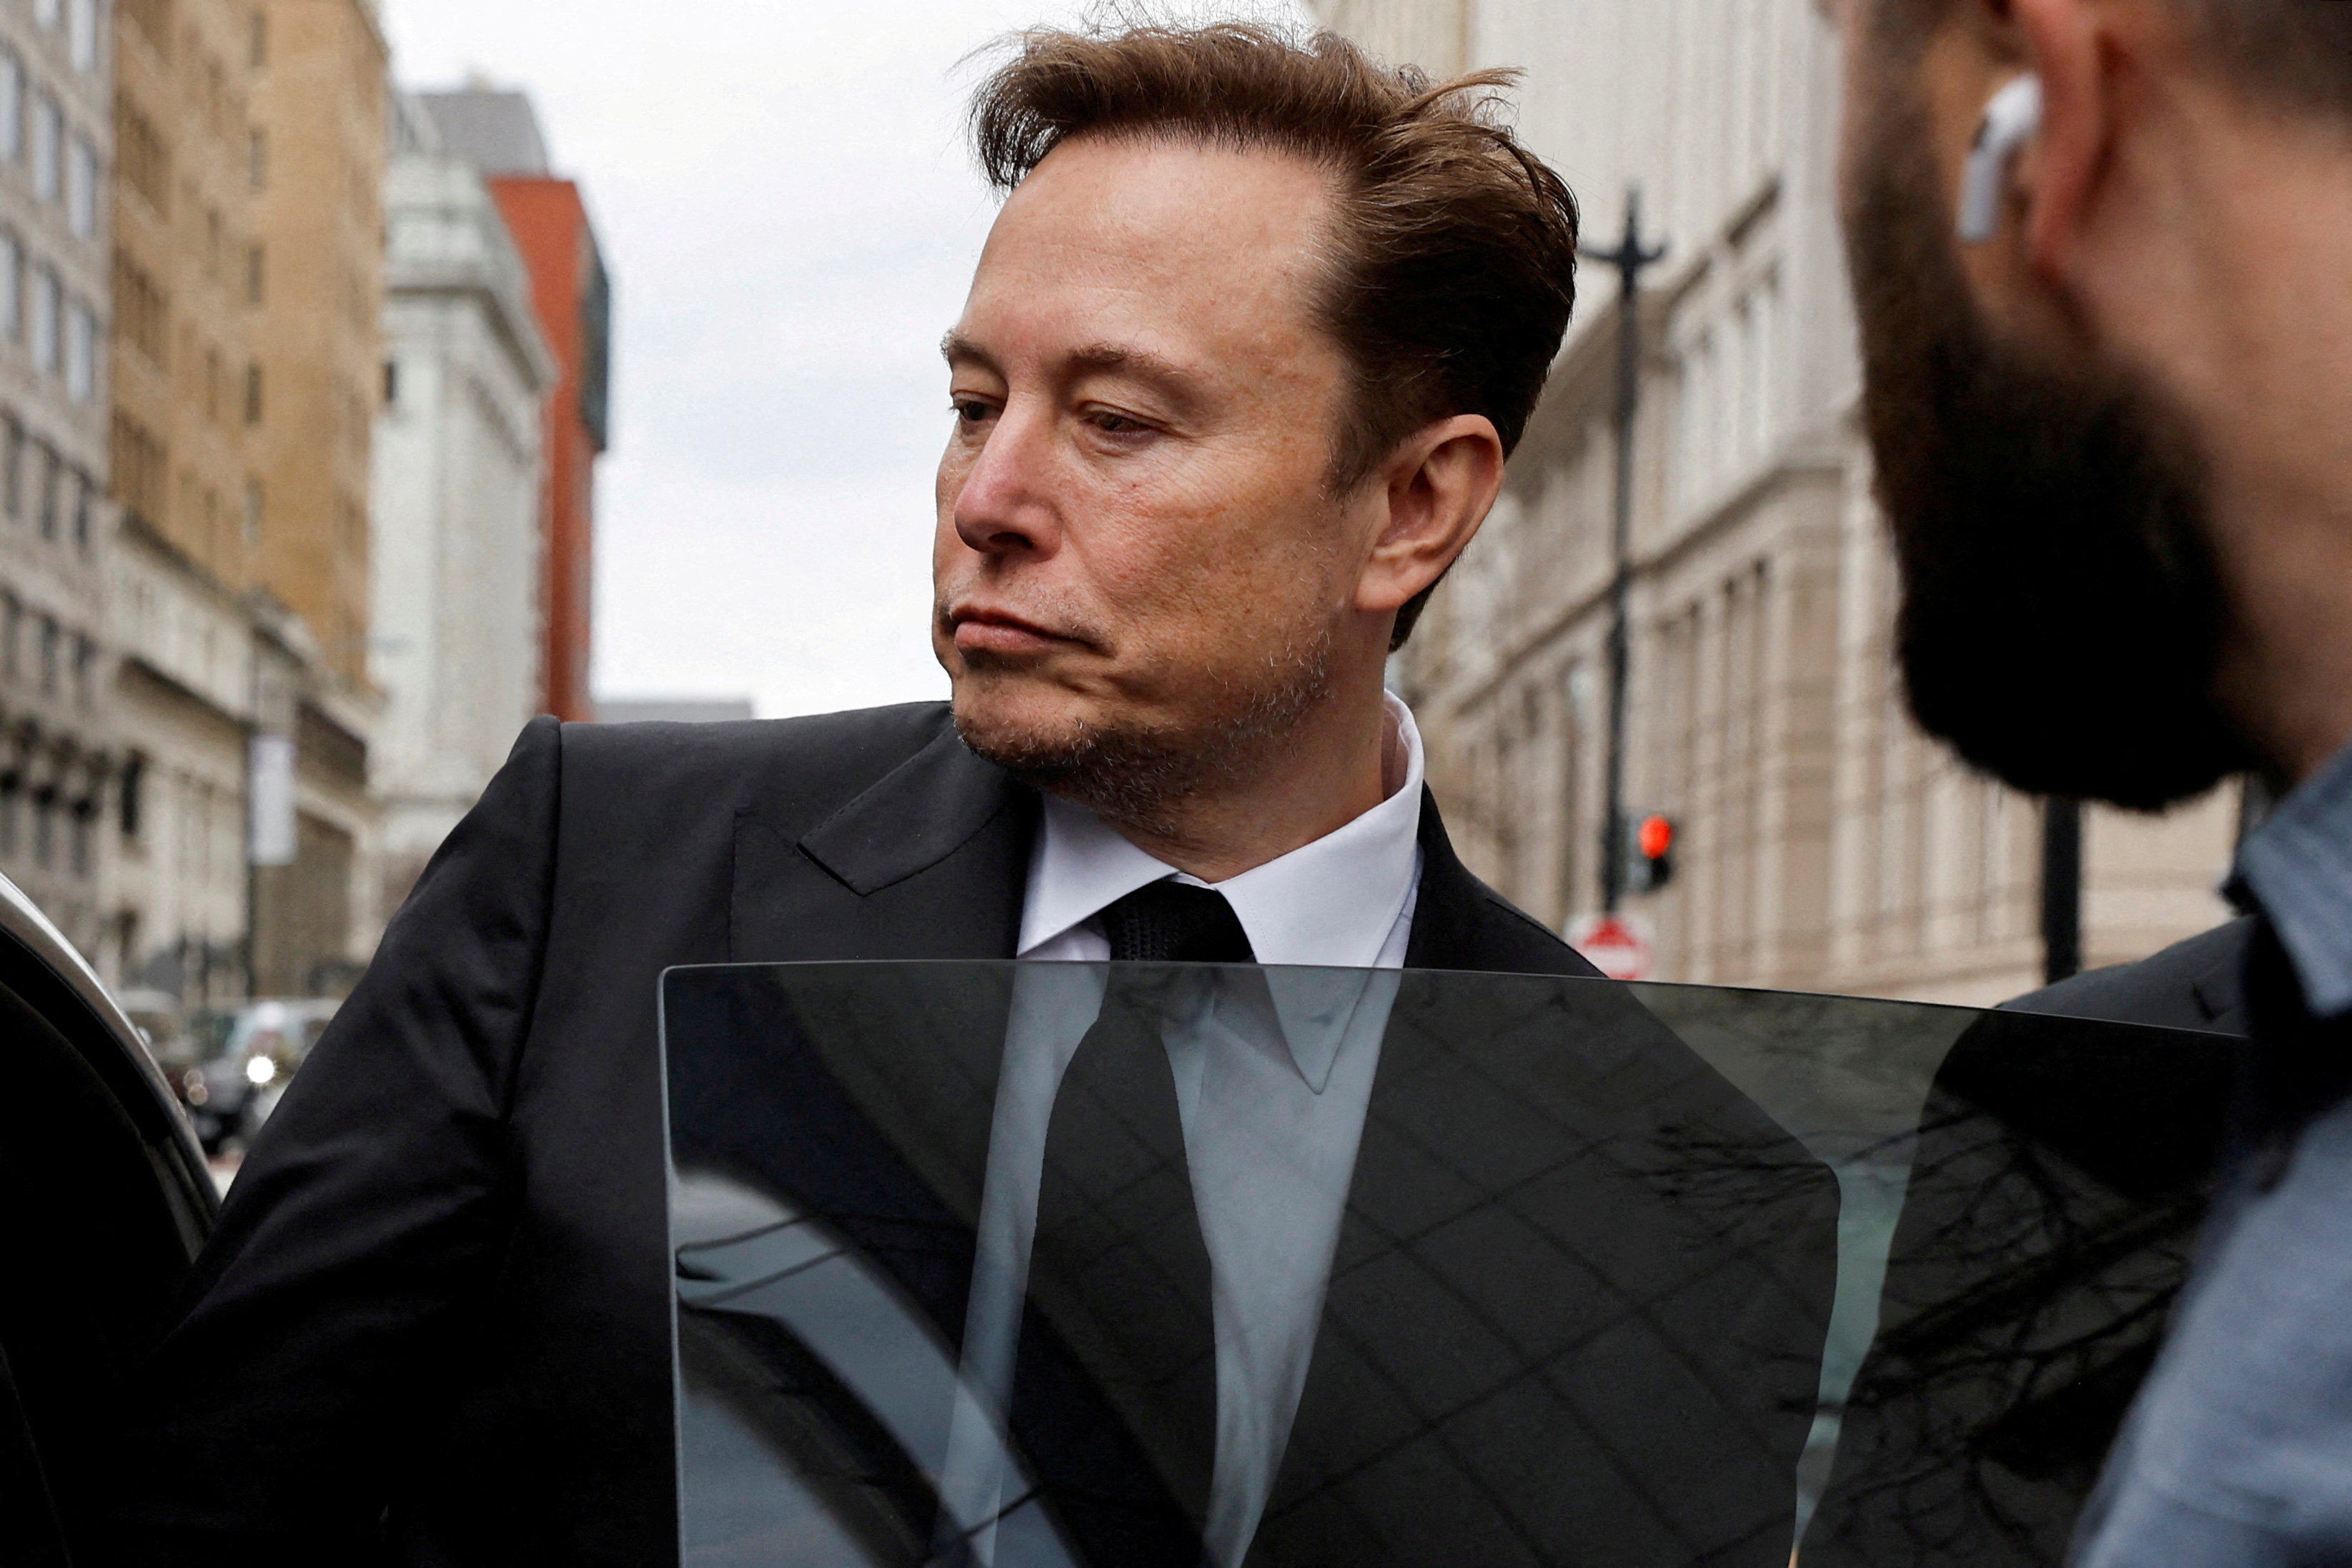 Elon Musk loses bid to end SEC gag over tweets